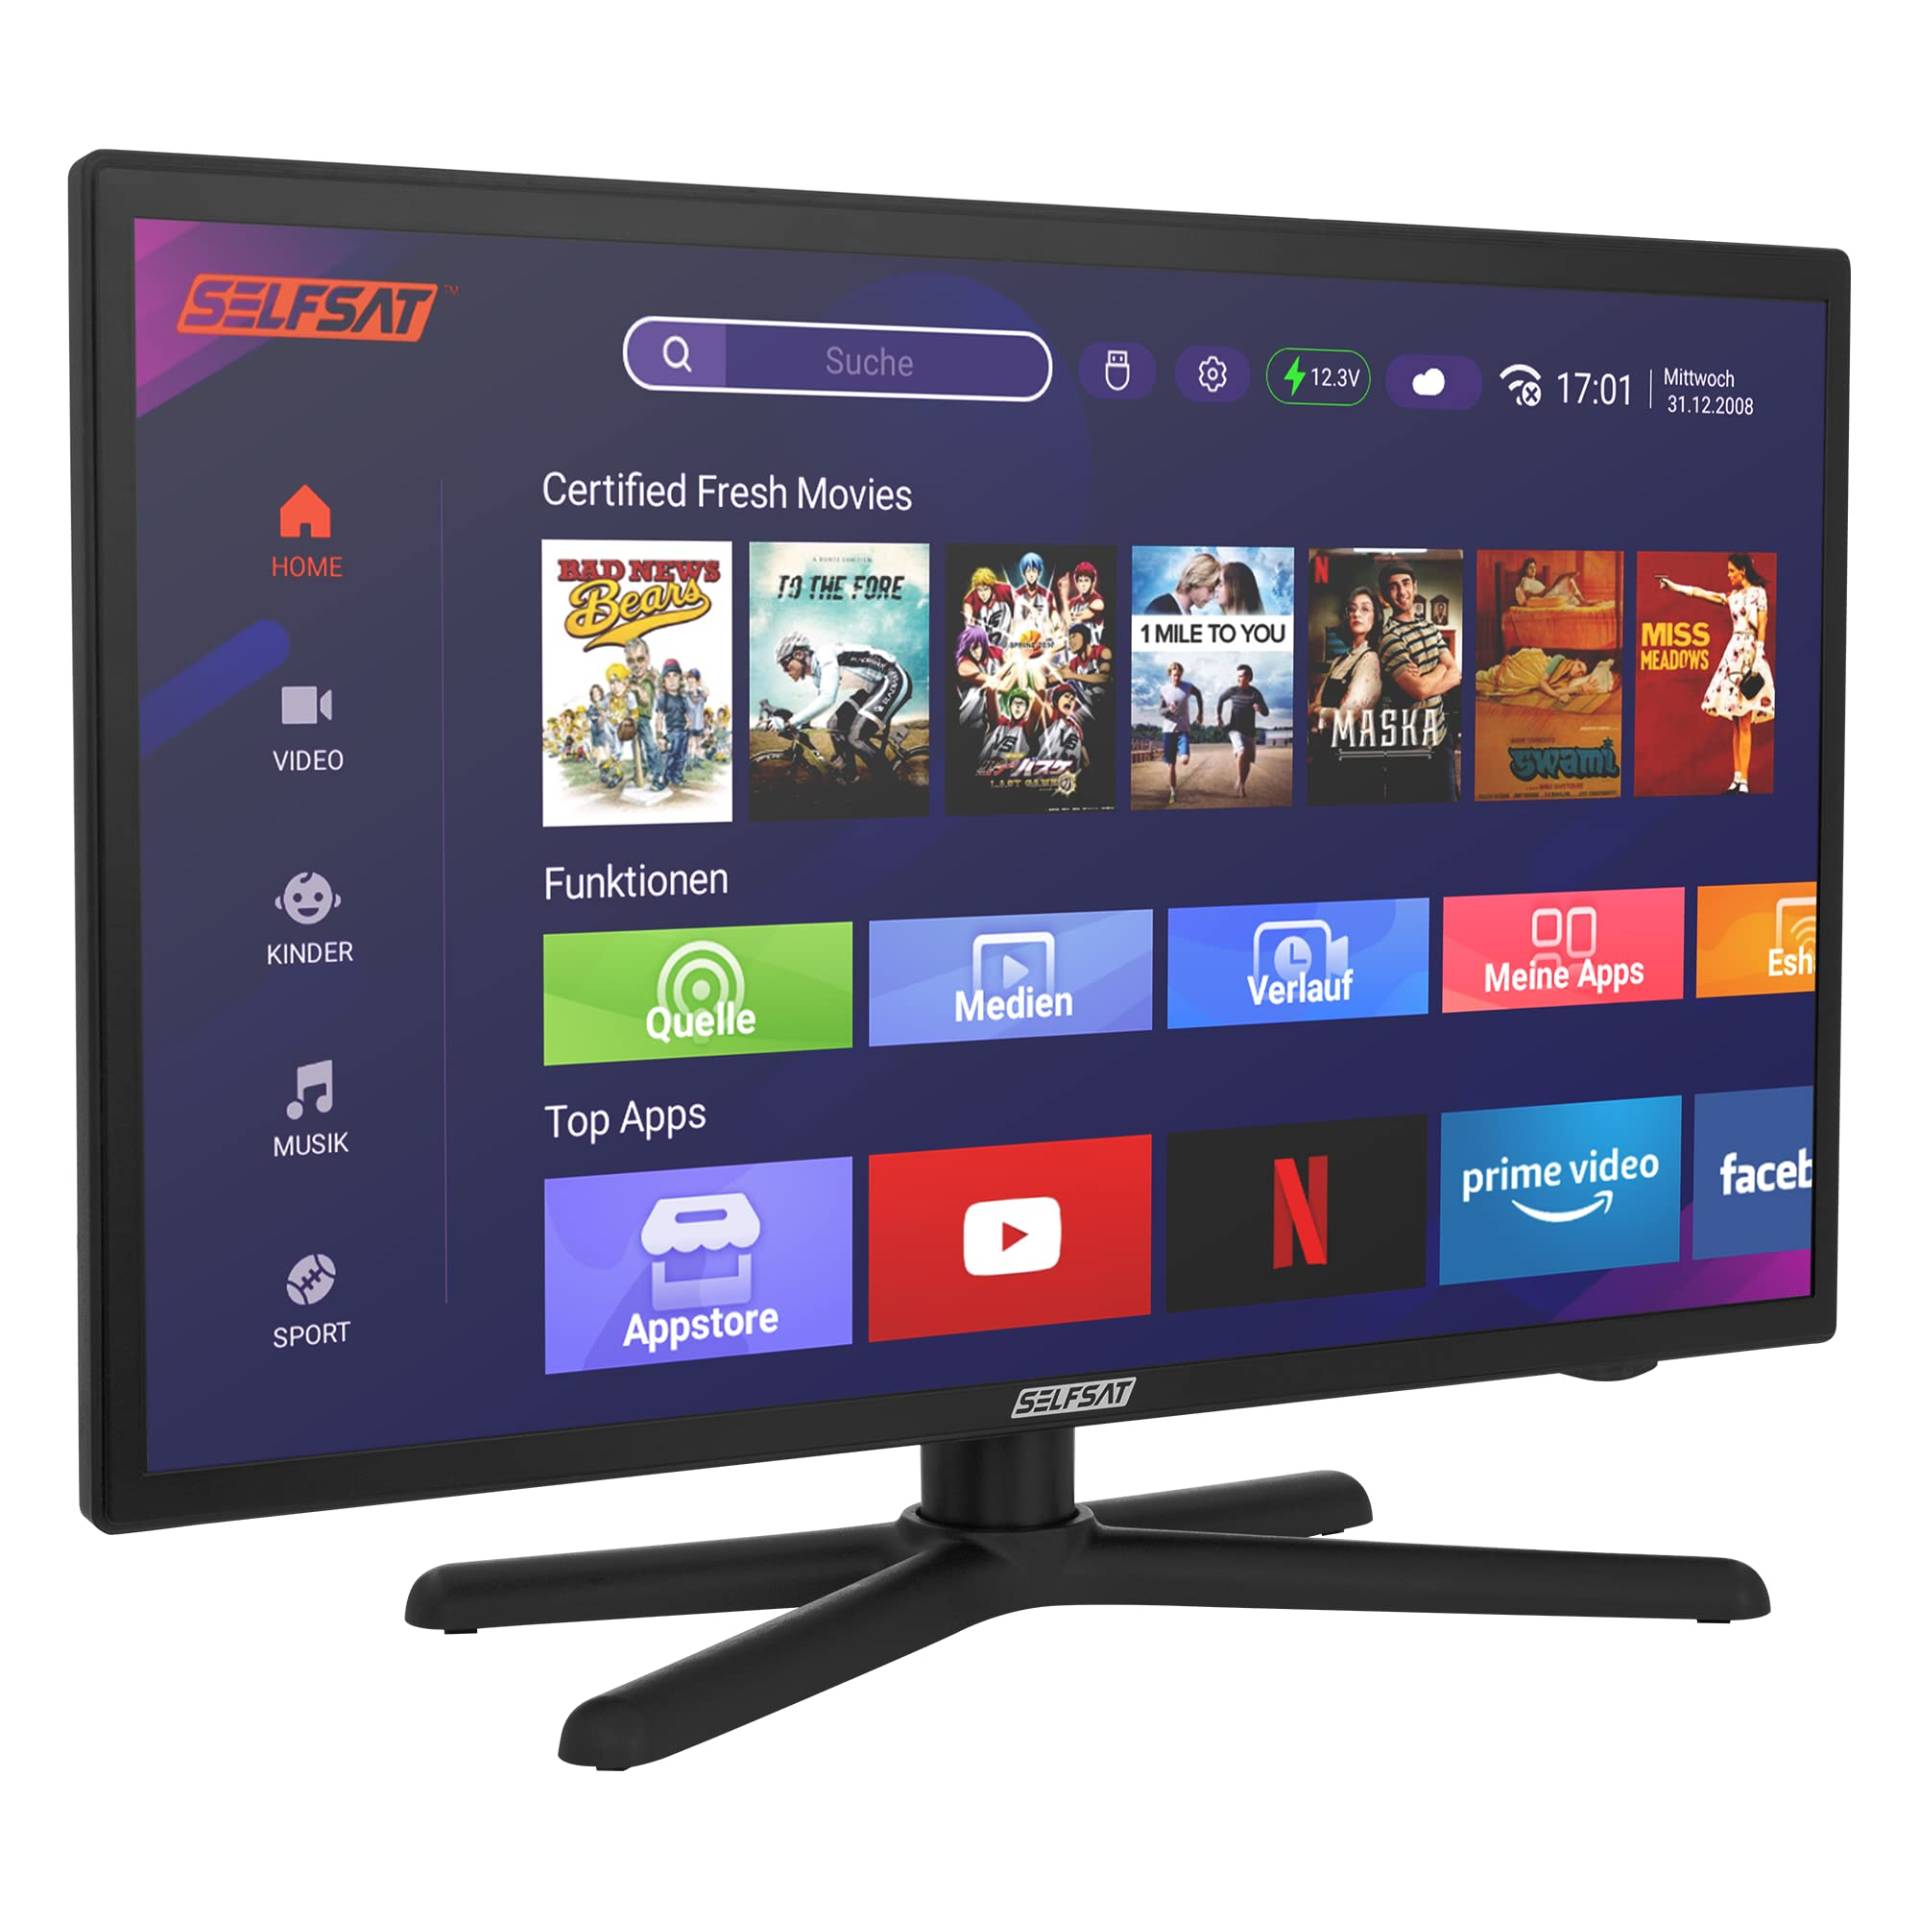 SELFSAT SMART LED TV 1222 (55 cm/22") inkl. DVB-S2/C/T2 HD Tuner mit WLAN und Bluetooth von SELFSAT